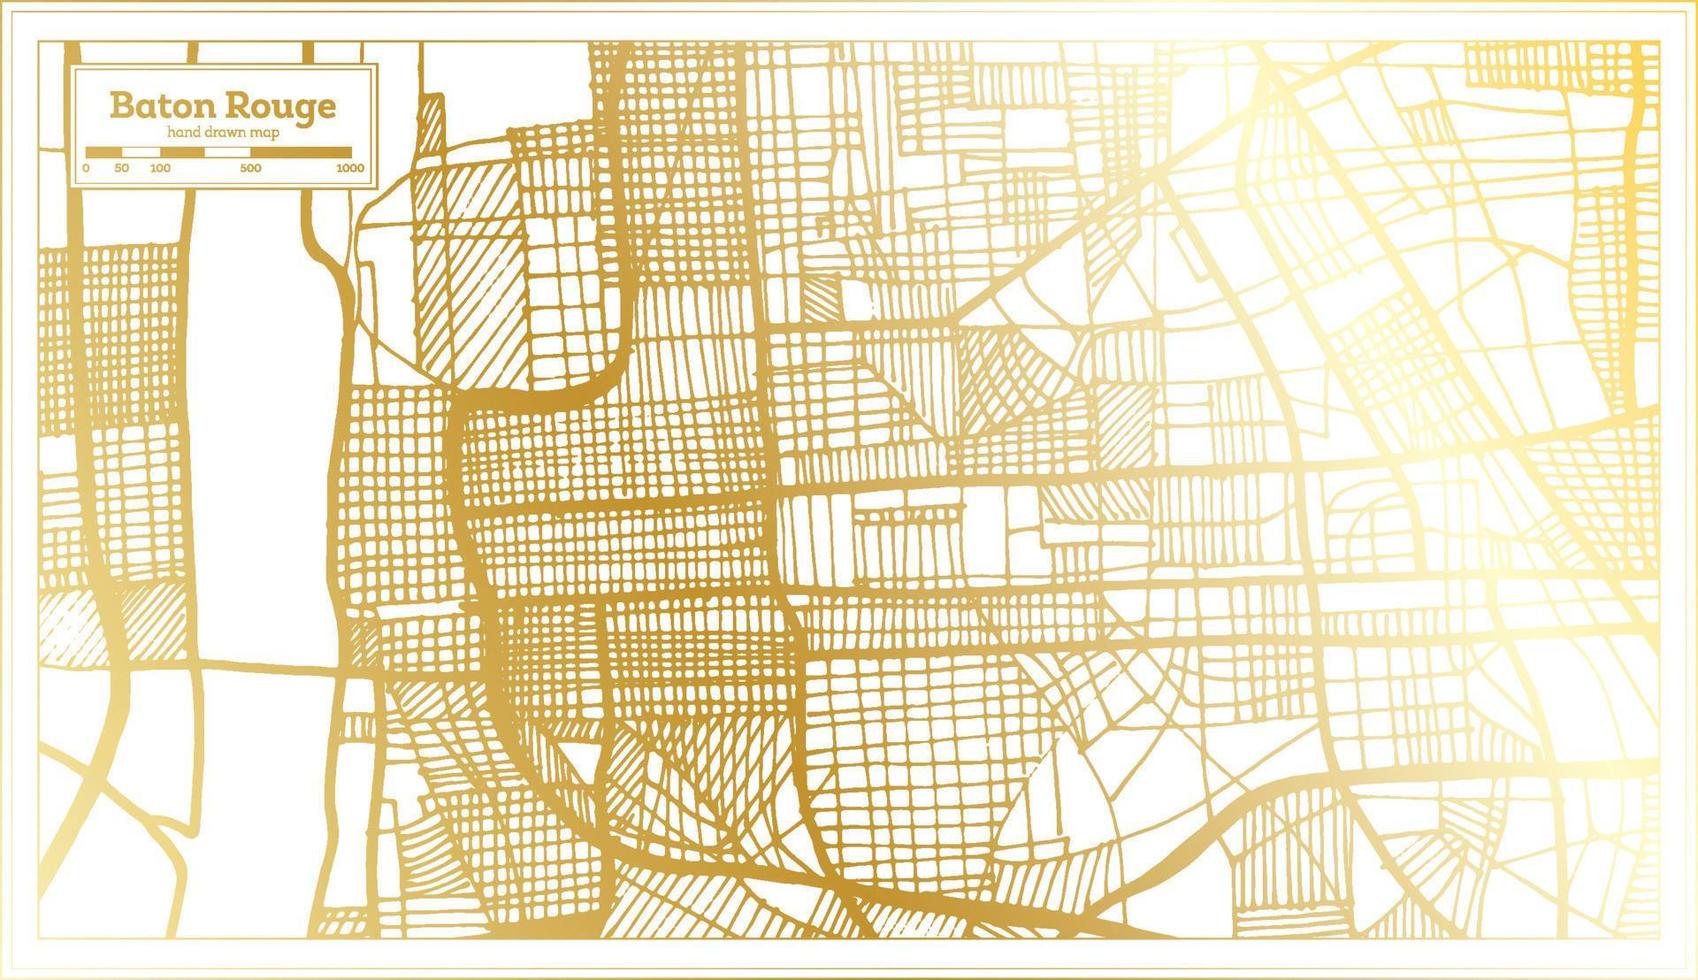 baton rouge louisiane usa plan de la ville dans un style rétro de couleur dorée. carte muette. vecteur